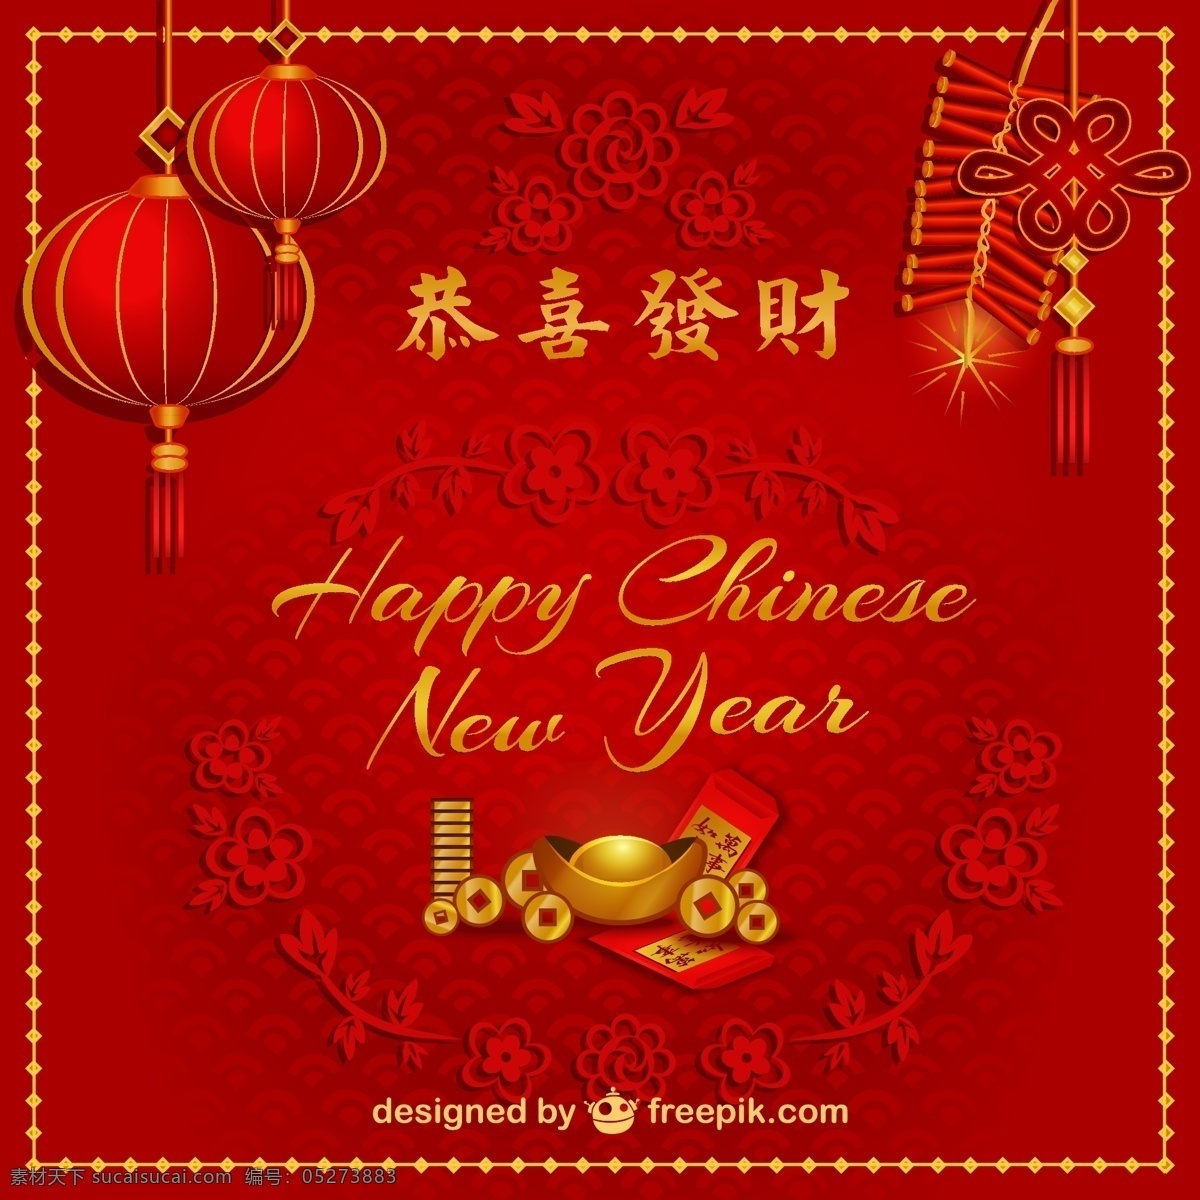 中国新年快乐 新年快乐 中国人 新中国 年 红色